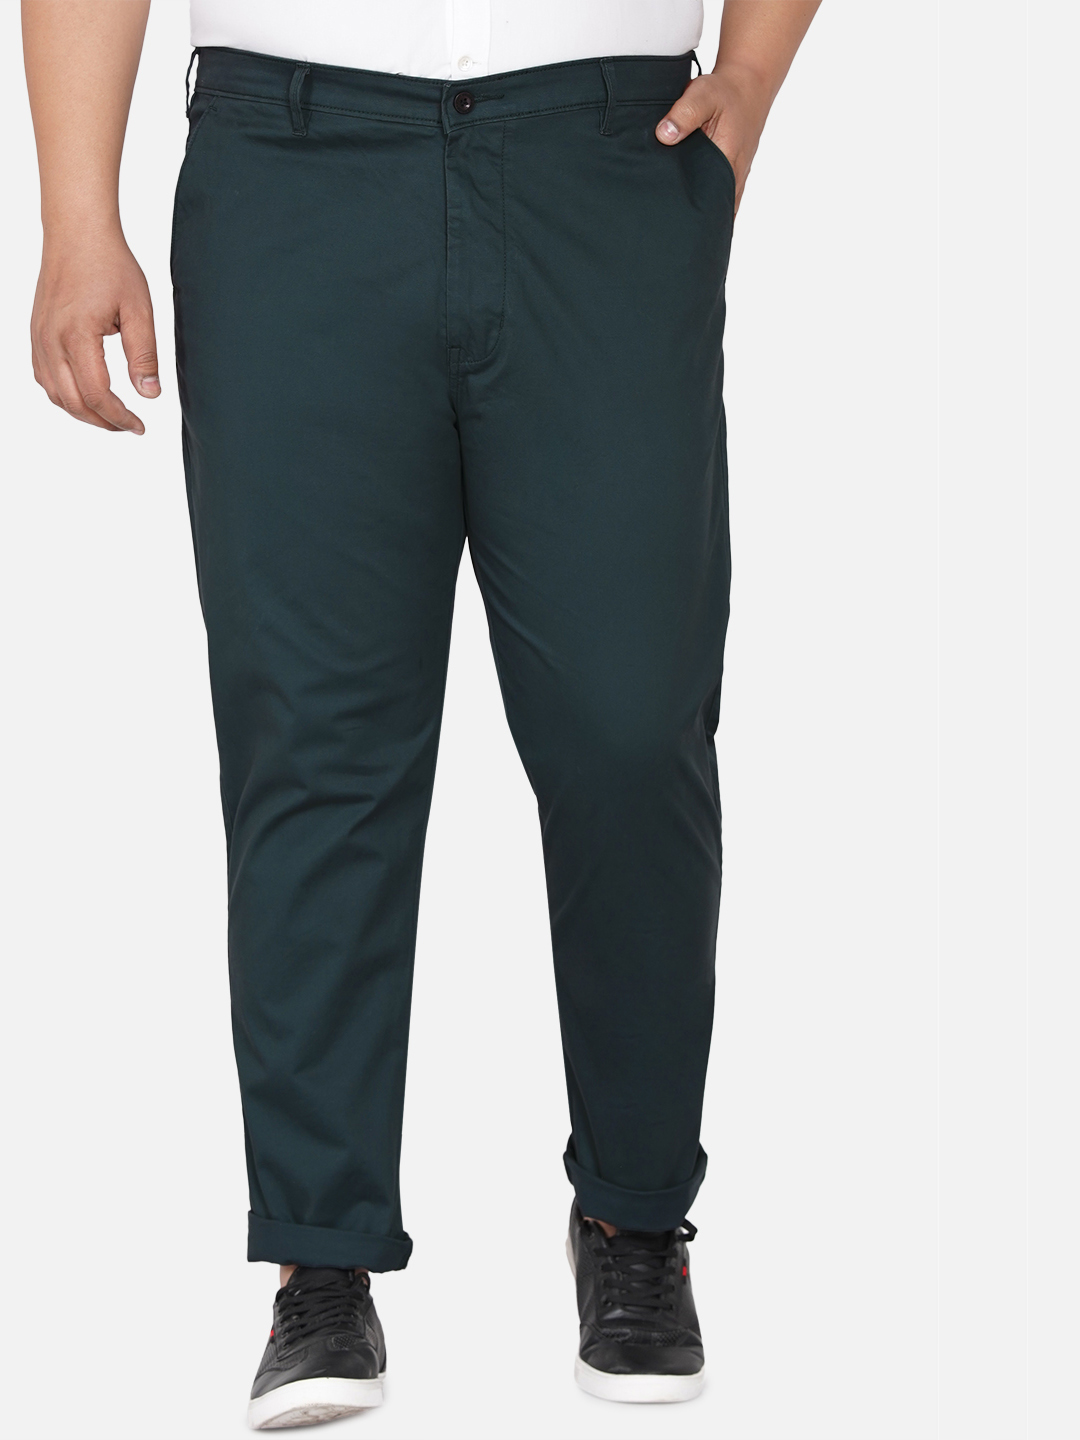 bottomwear/trousers/JPTR2195V/jptr2195v-1.jpg